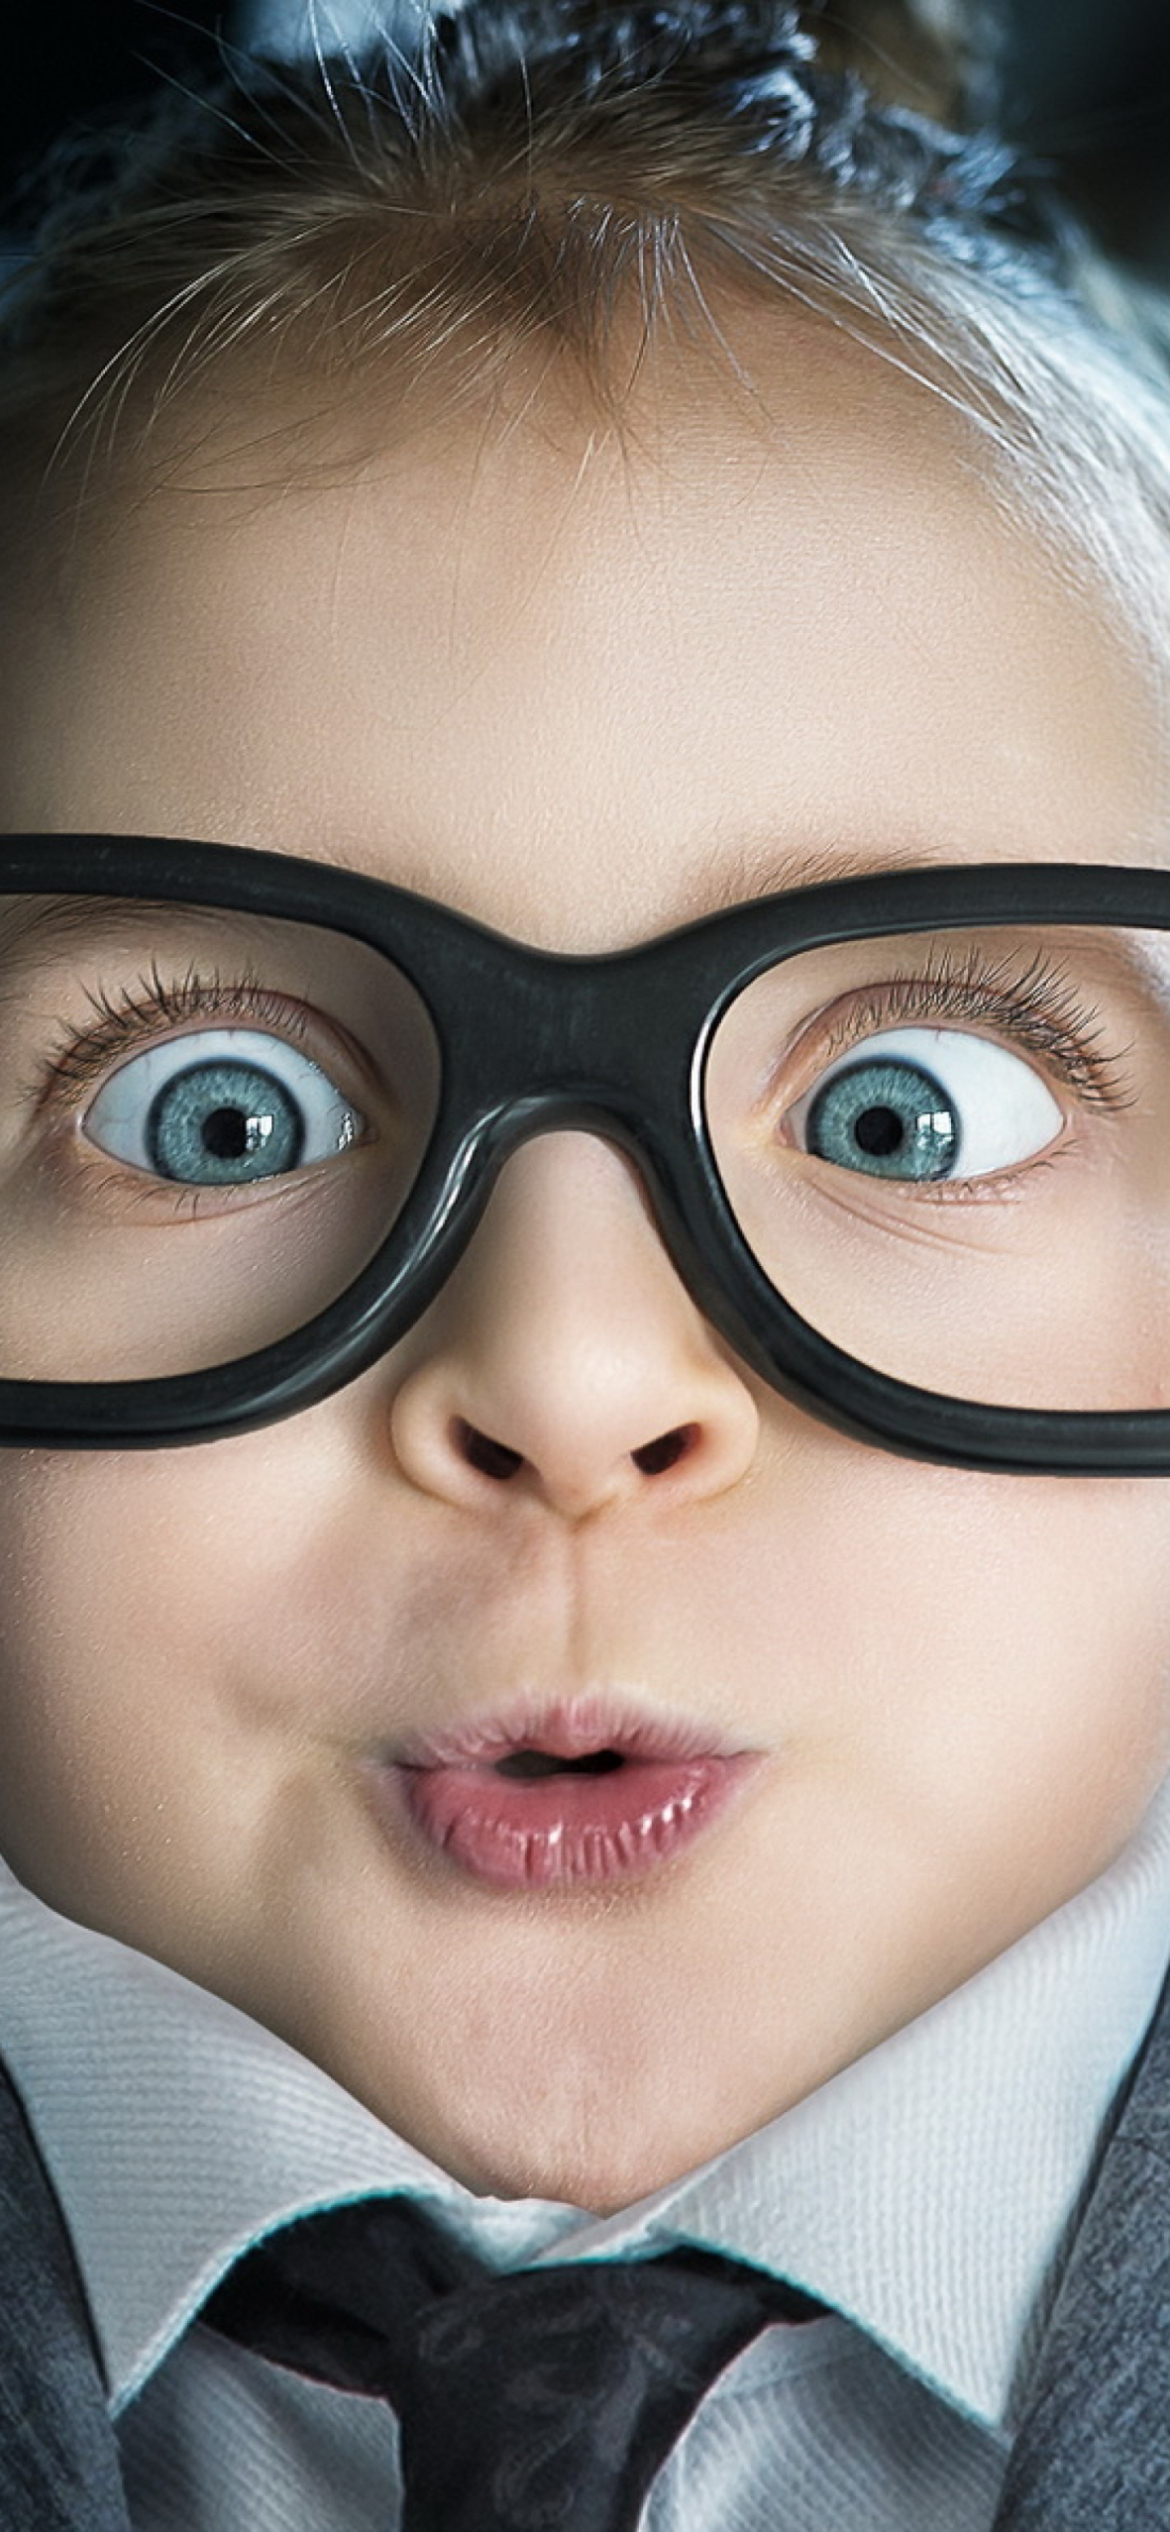 Das Funny Child In Big Glasses Wallpaper 1170x2532